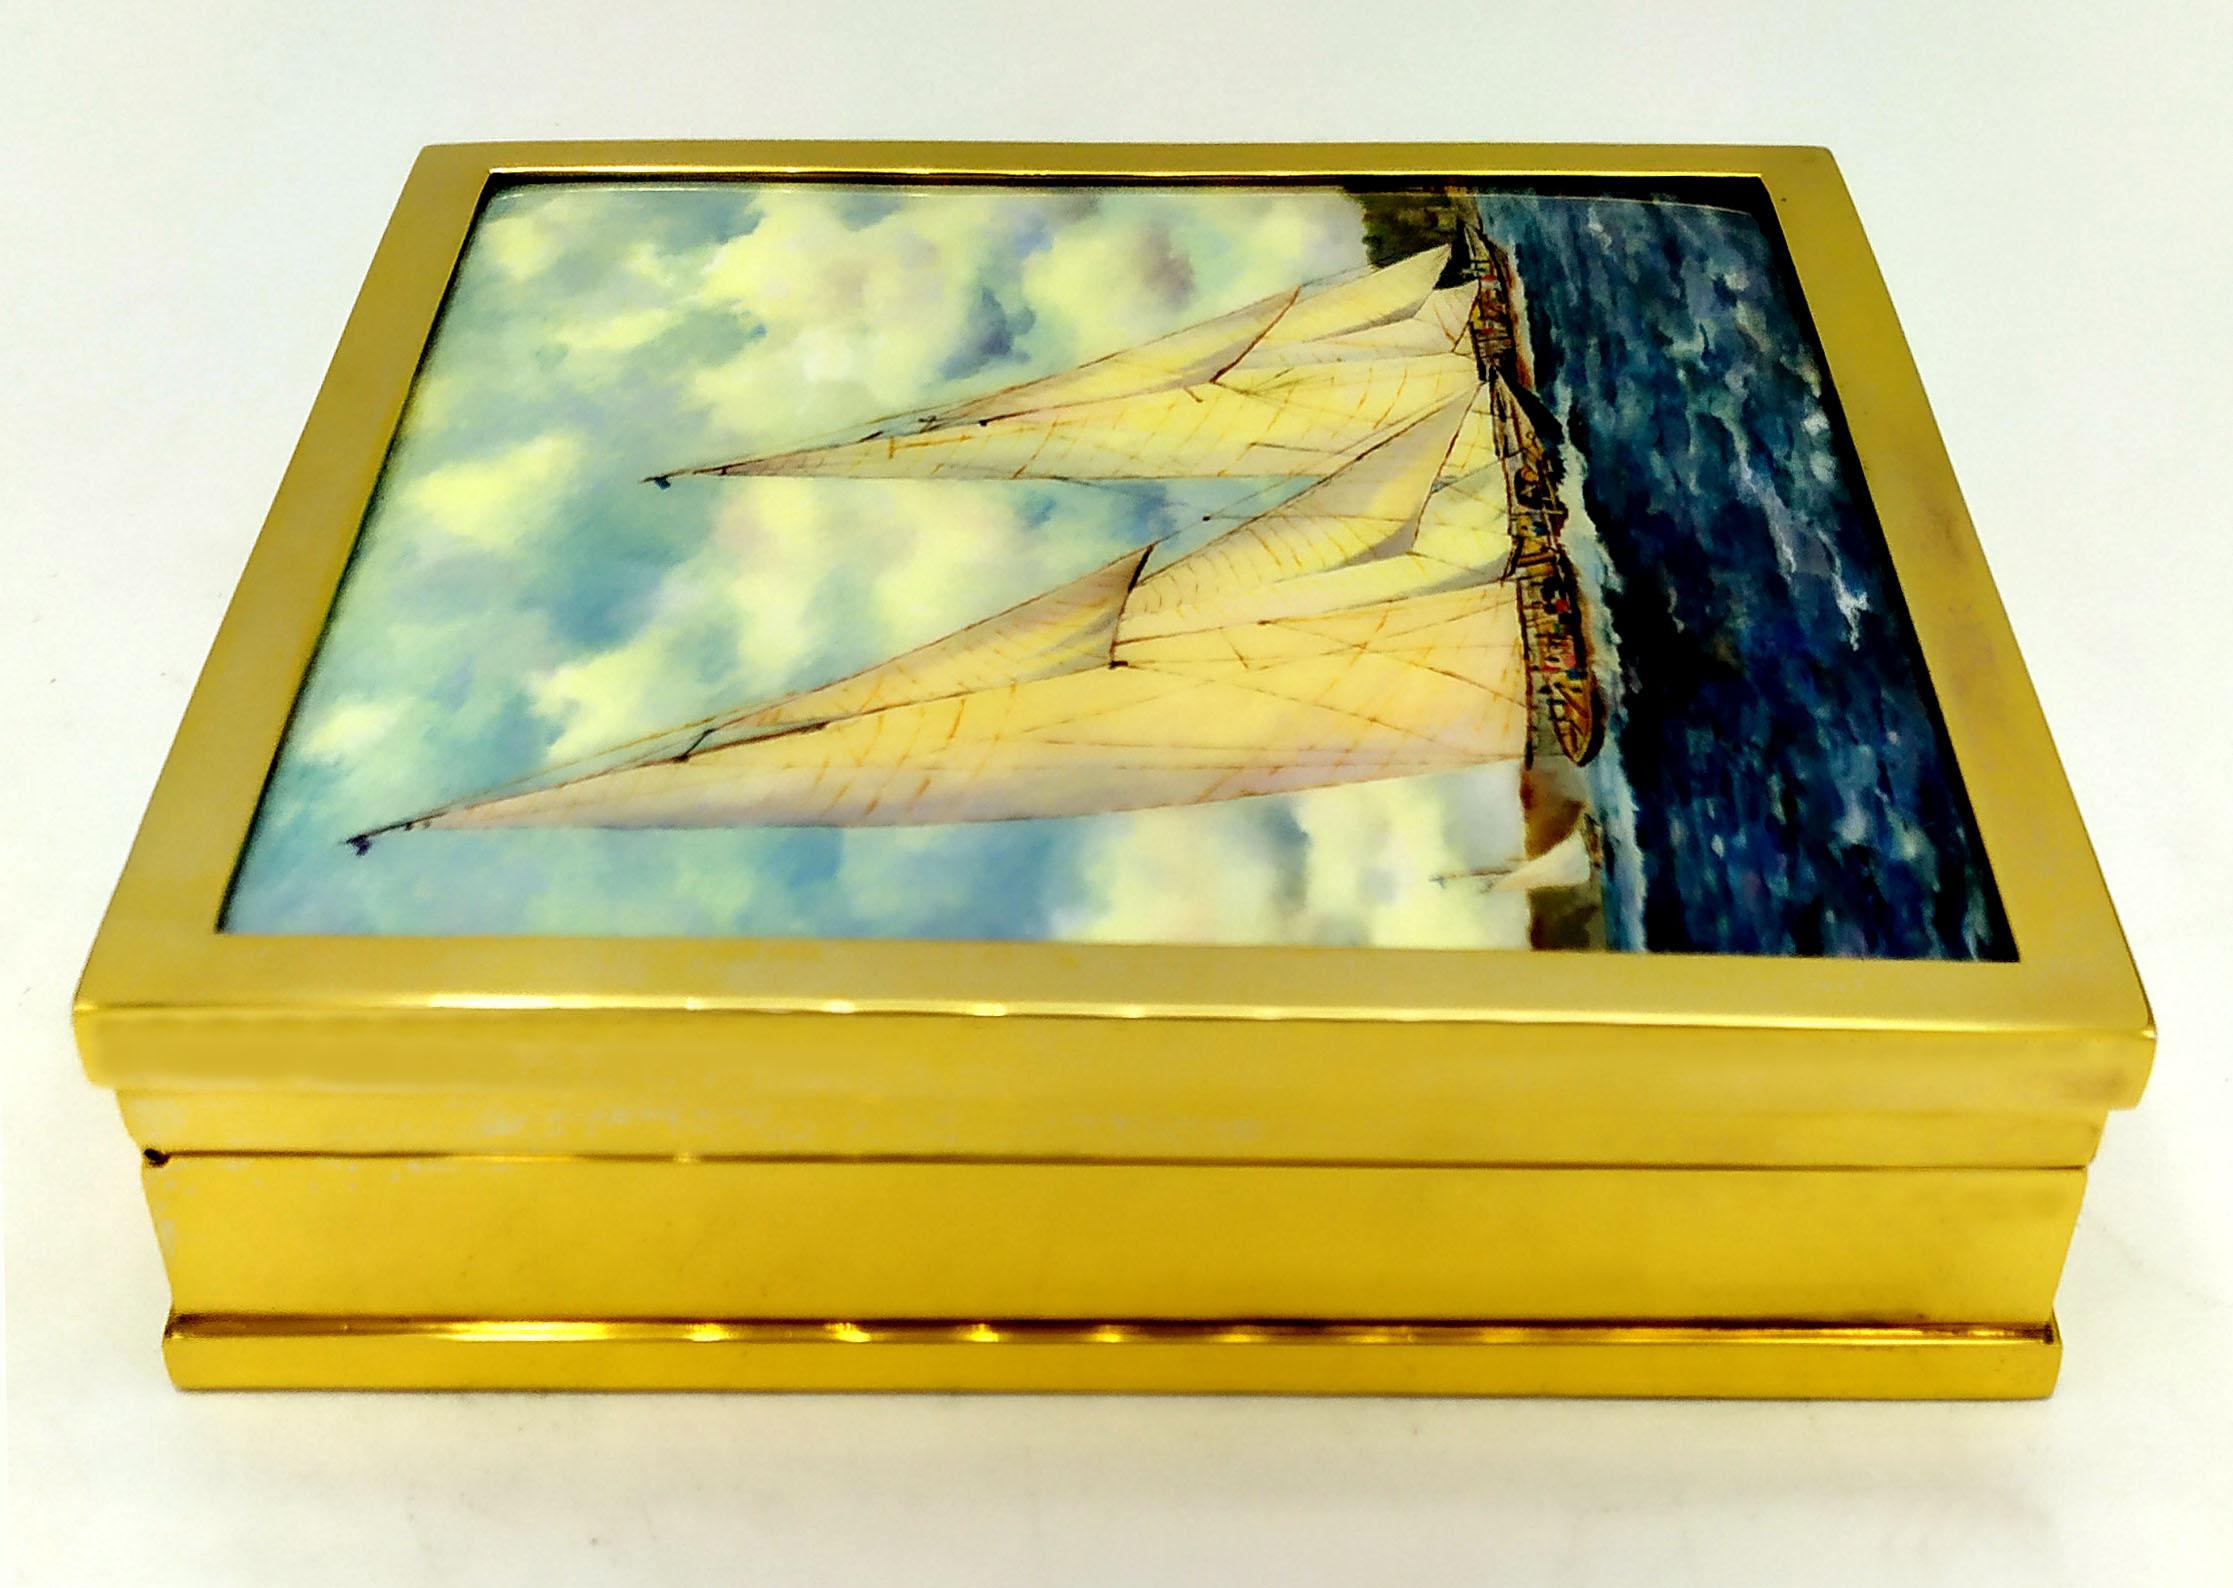 La miniature Table Box Sailing Boats est en 925/1000 sterling.
La figurine Table Box Sailing Boats est peinte à la main en émaux cuits.
La miniature de la boîte de table des bateaux à voile est au carré.
La miniature de la boîte de table Bateaux à